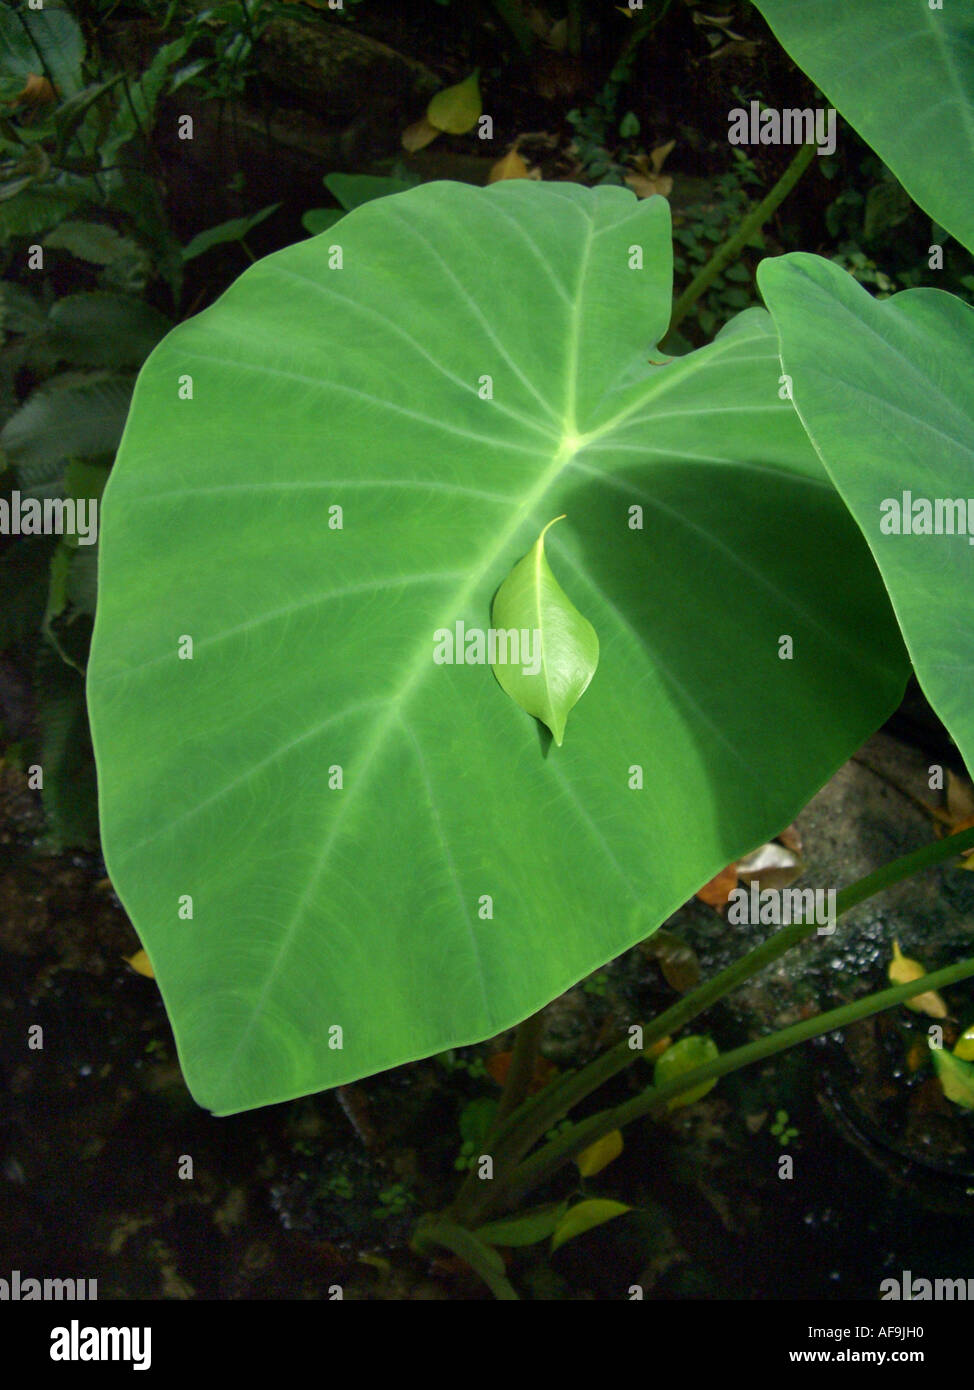 wilde Taro, Dasheen, Elefantenohren (Colocasia Esculenta), Blatt, mit einem Blatt von Ficus Benjamina drauf Stockfoto